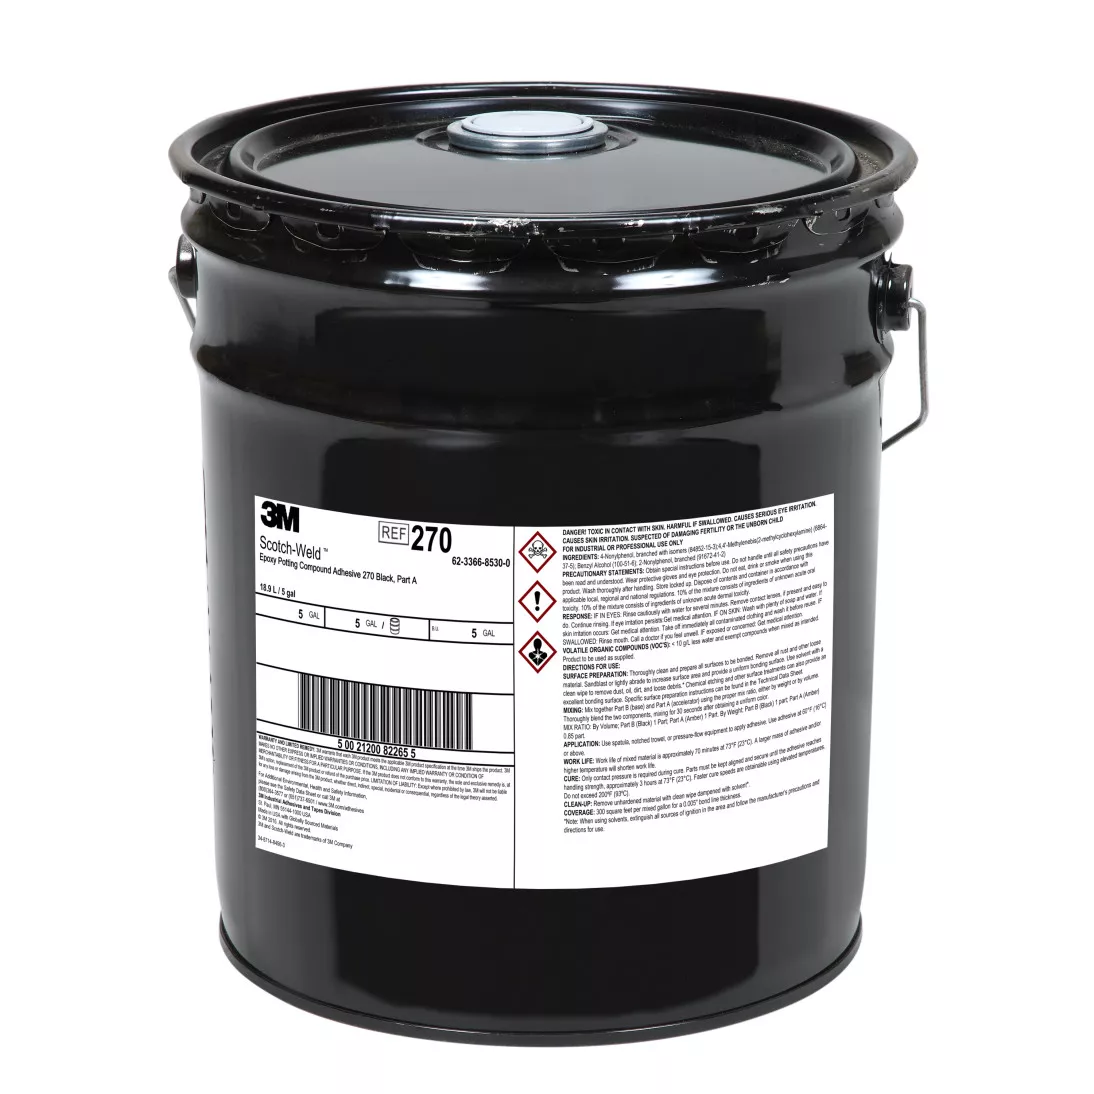 3M™ Scotch-Weld™ Epoxy Potting Compound 270, Black, Part A, 5 Gallon
Drum (Pail)